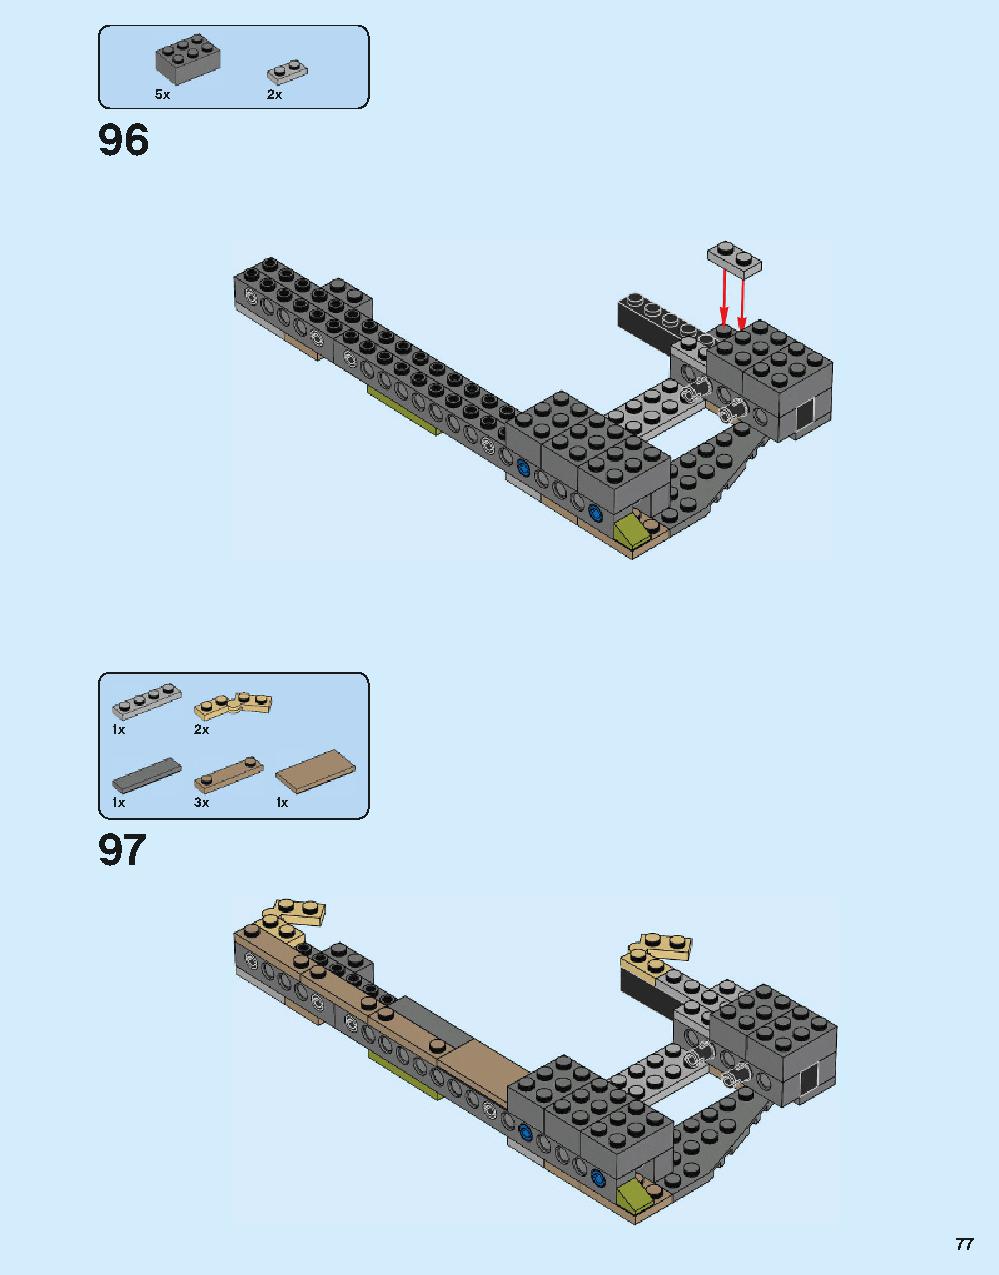 ホグワーツ城 71043 レゴの商品情報 レゴの説明書・組立方法 77 page